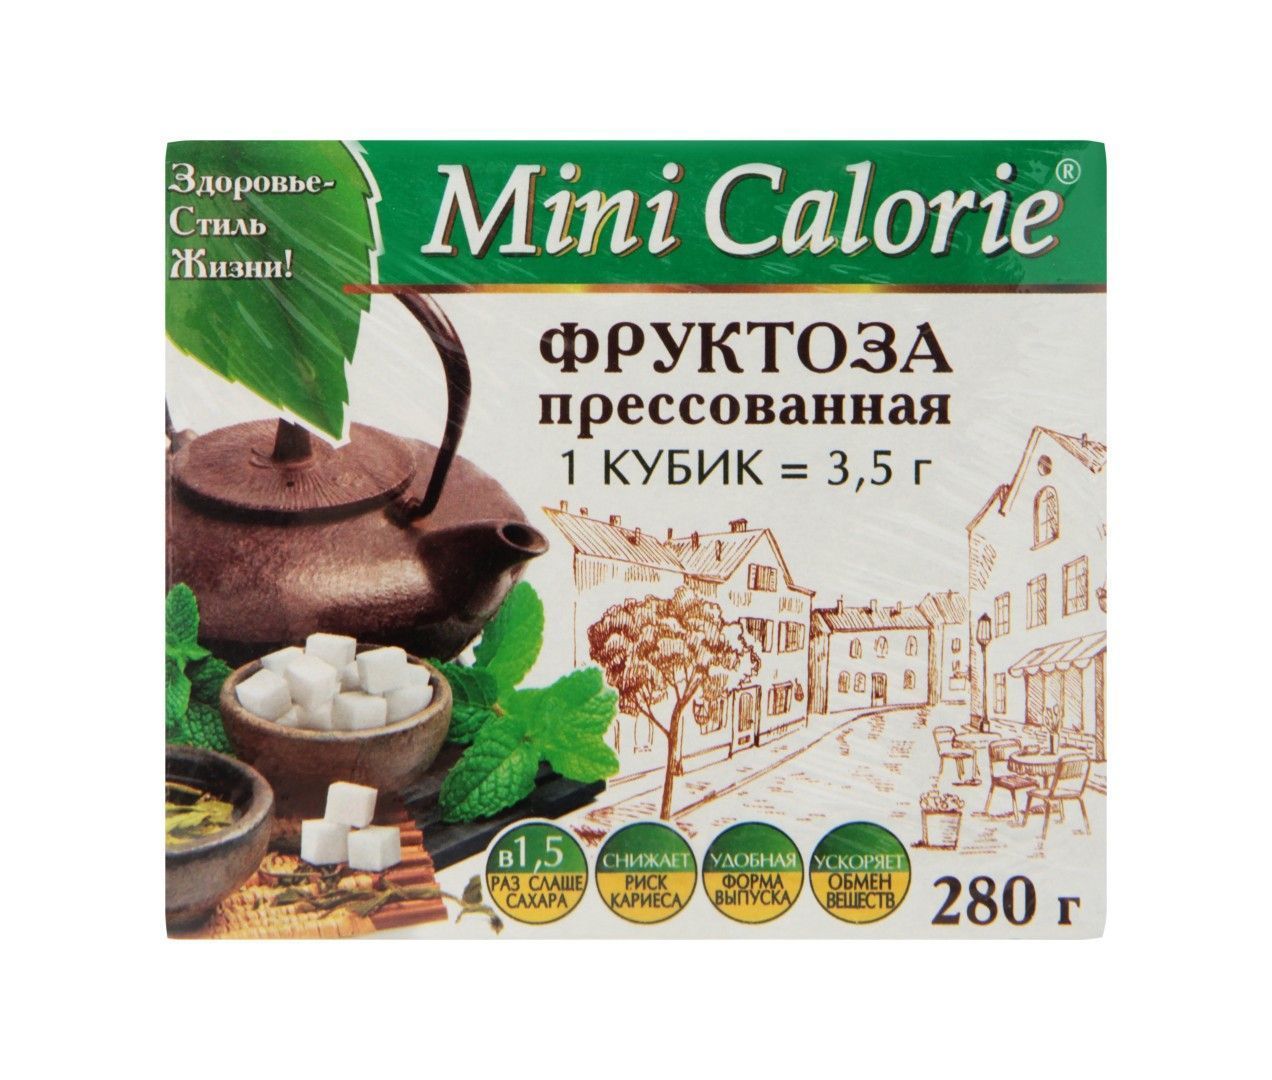 Фруктоза Mini Calorie прессованная, 280 г.